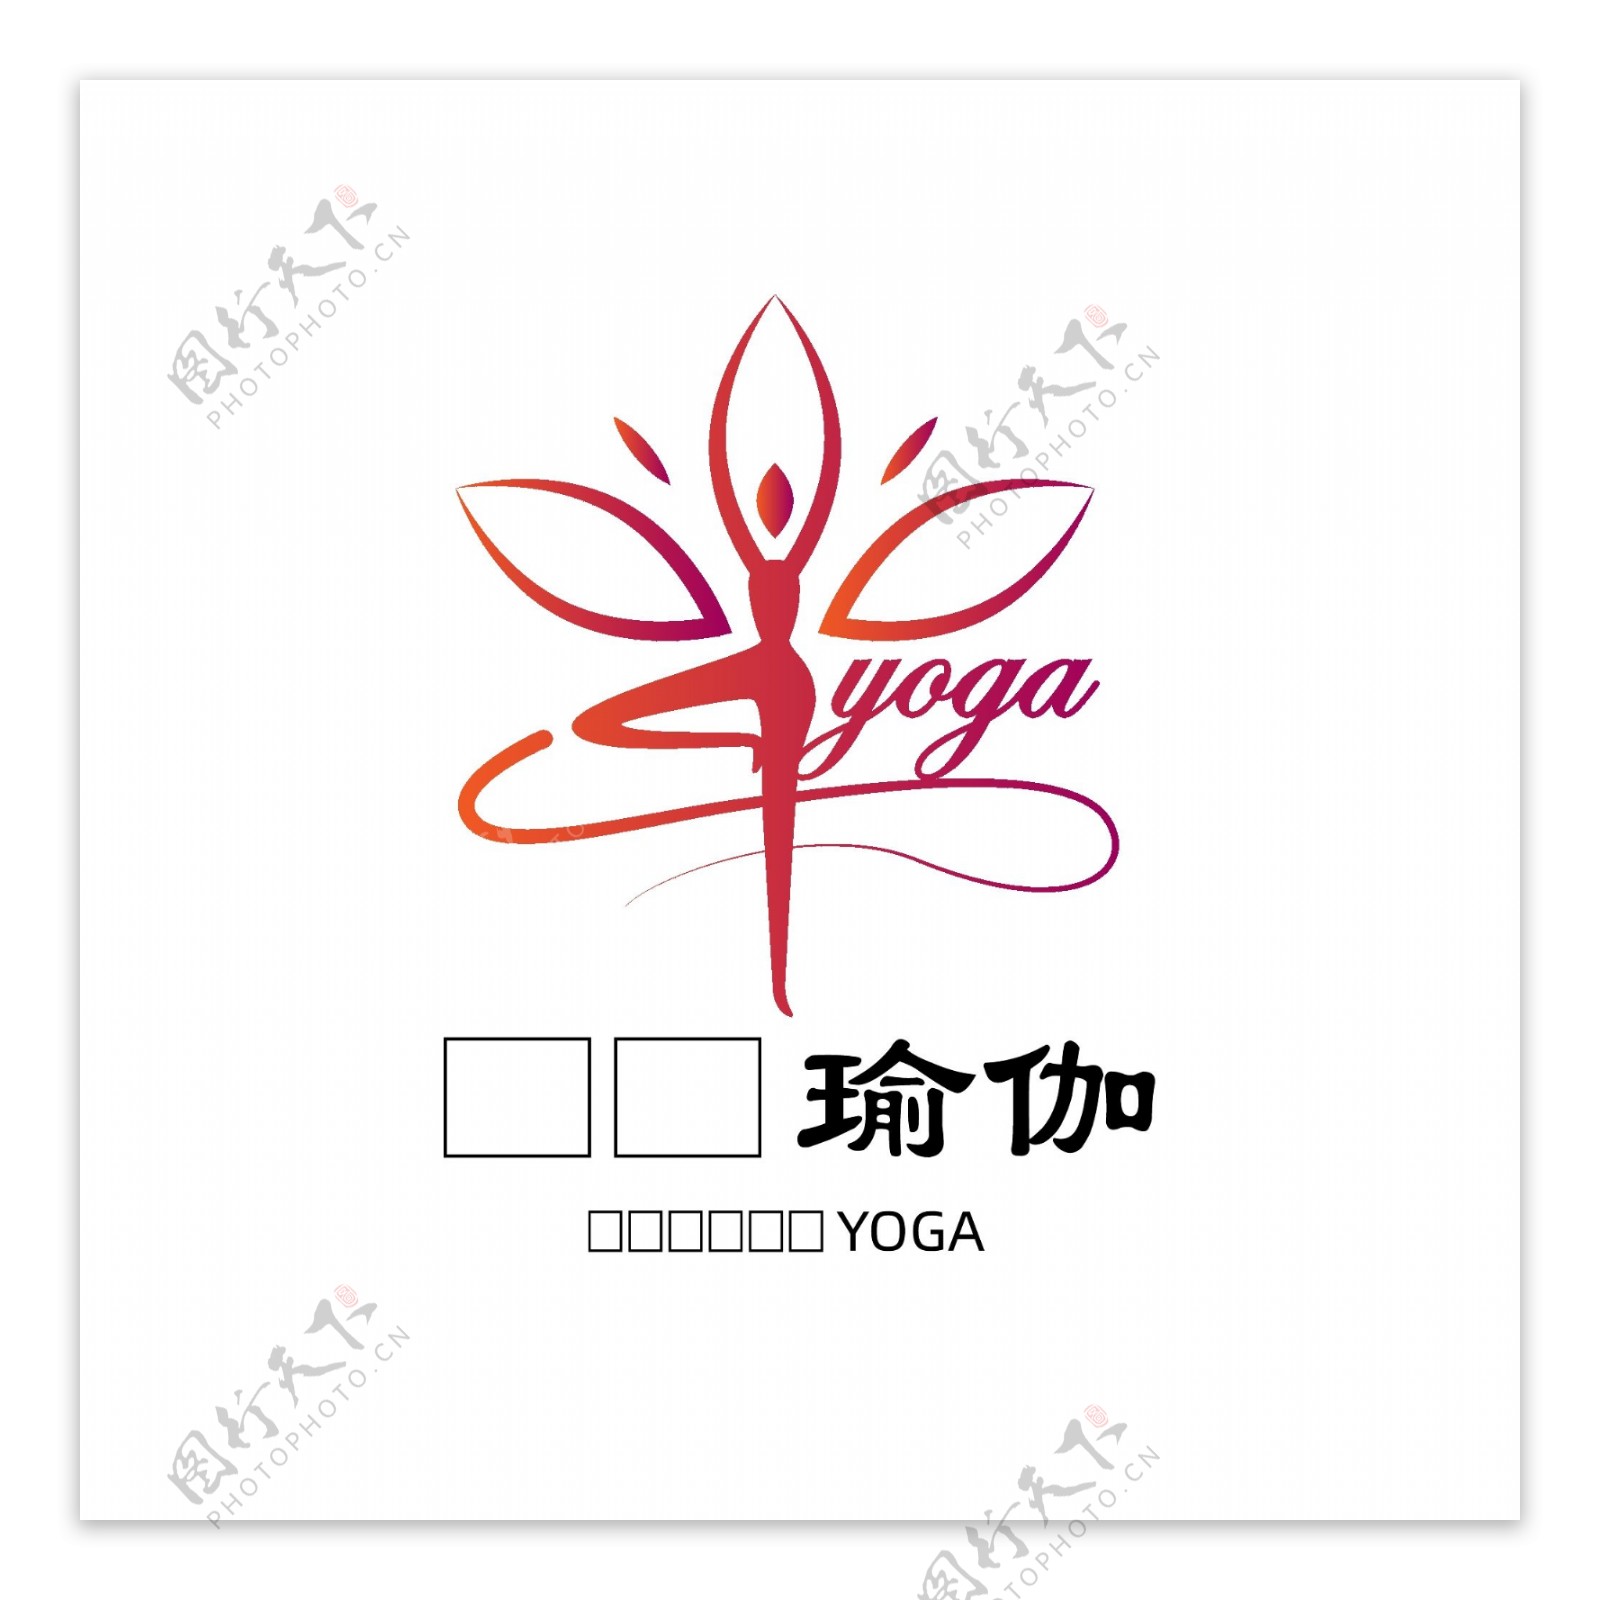 瑜伽公司logo